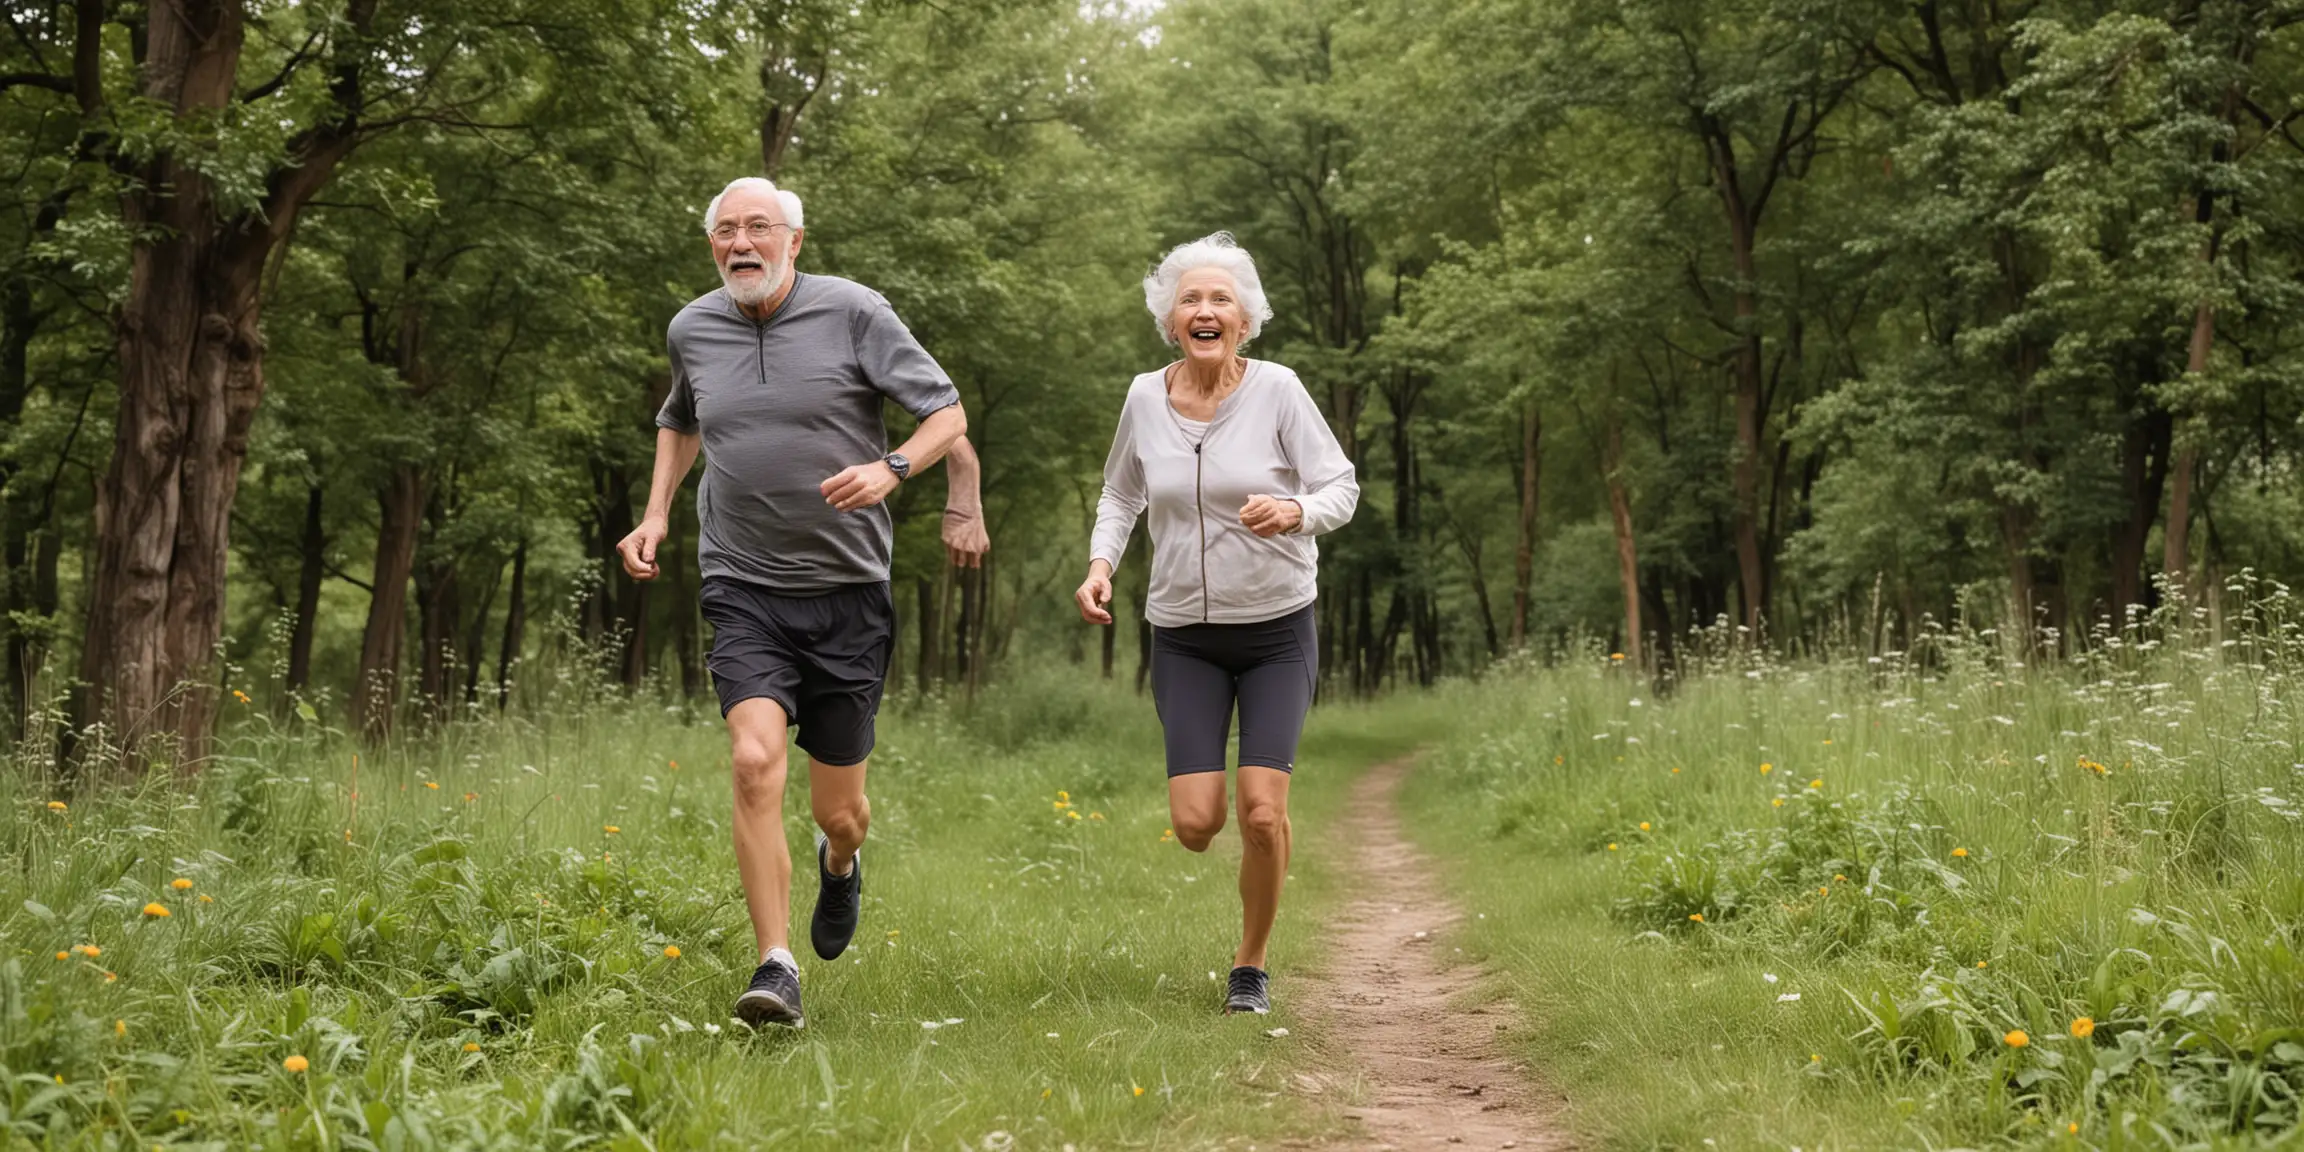 Elderly Couple Joyfully Running Amidst Scenic Nature